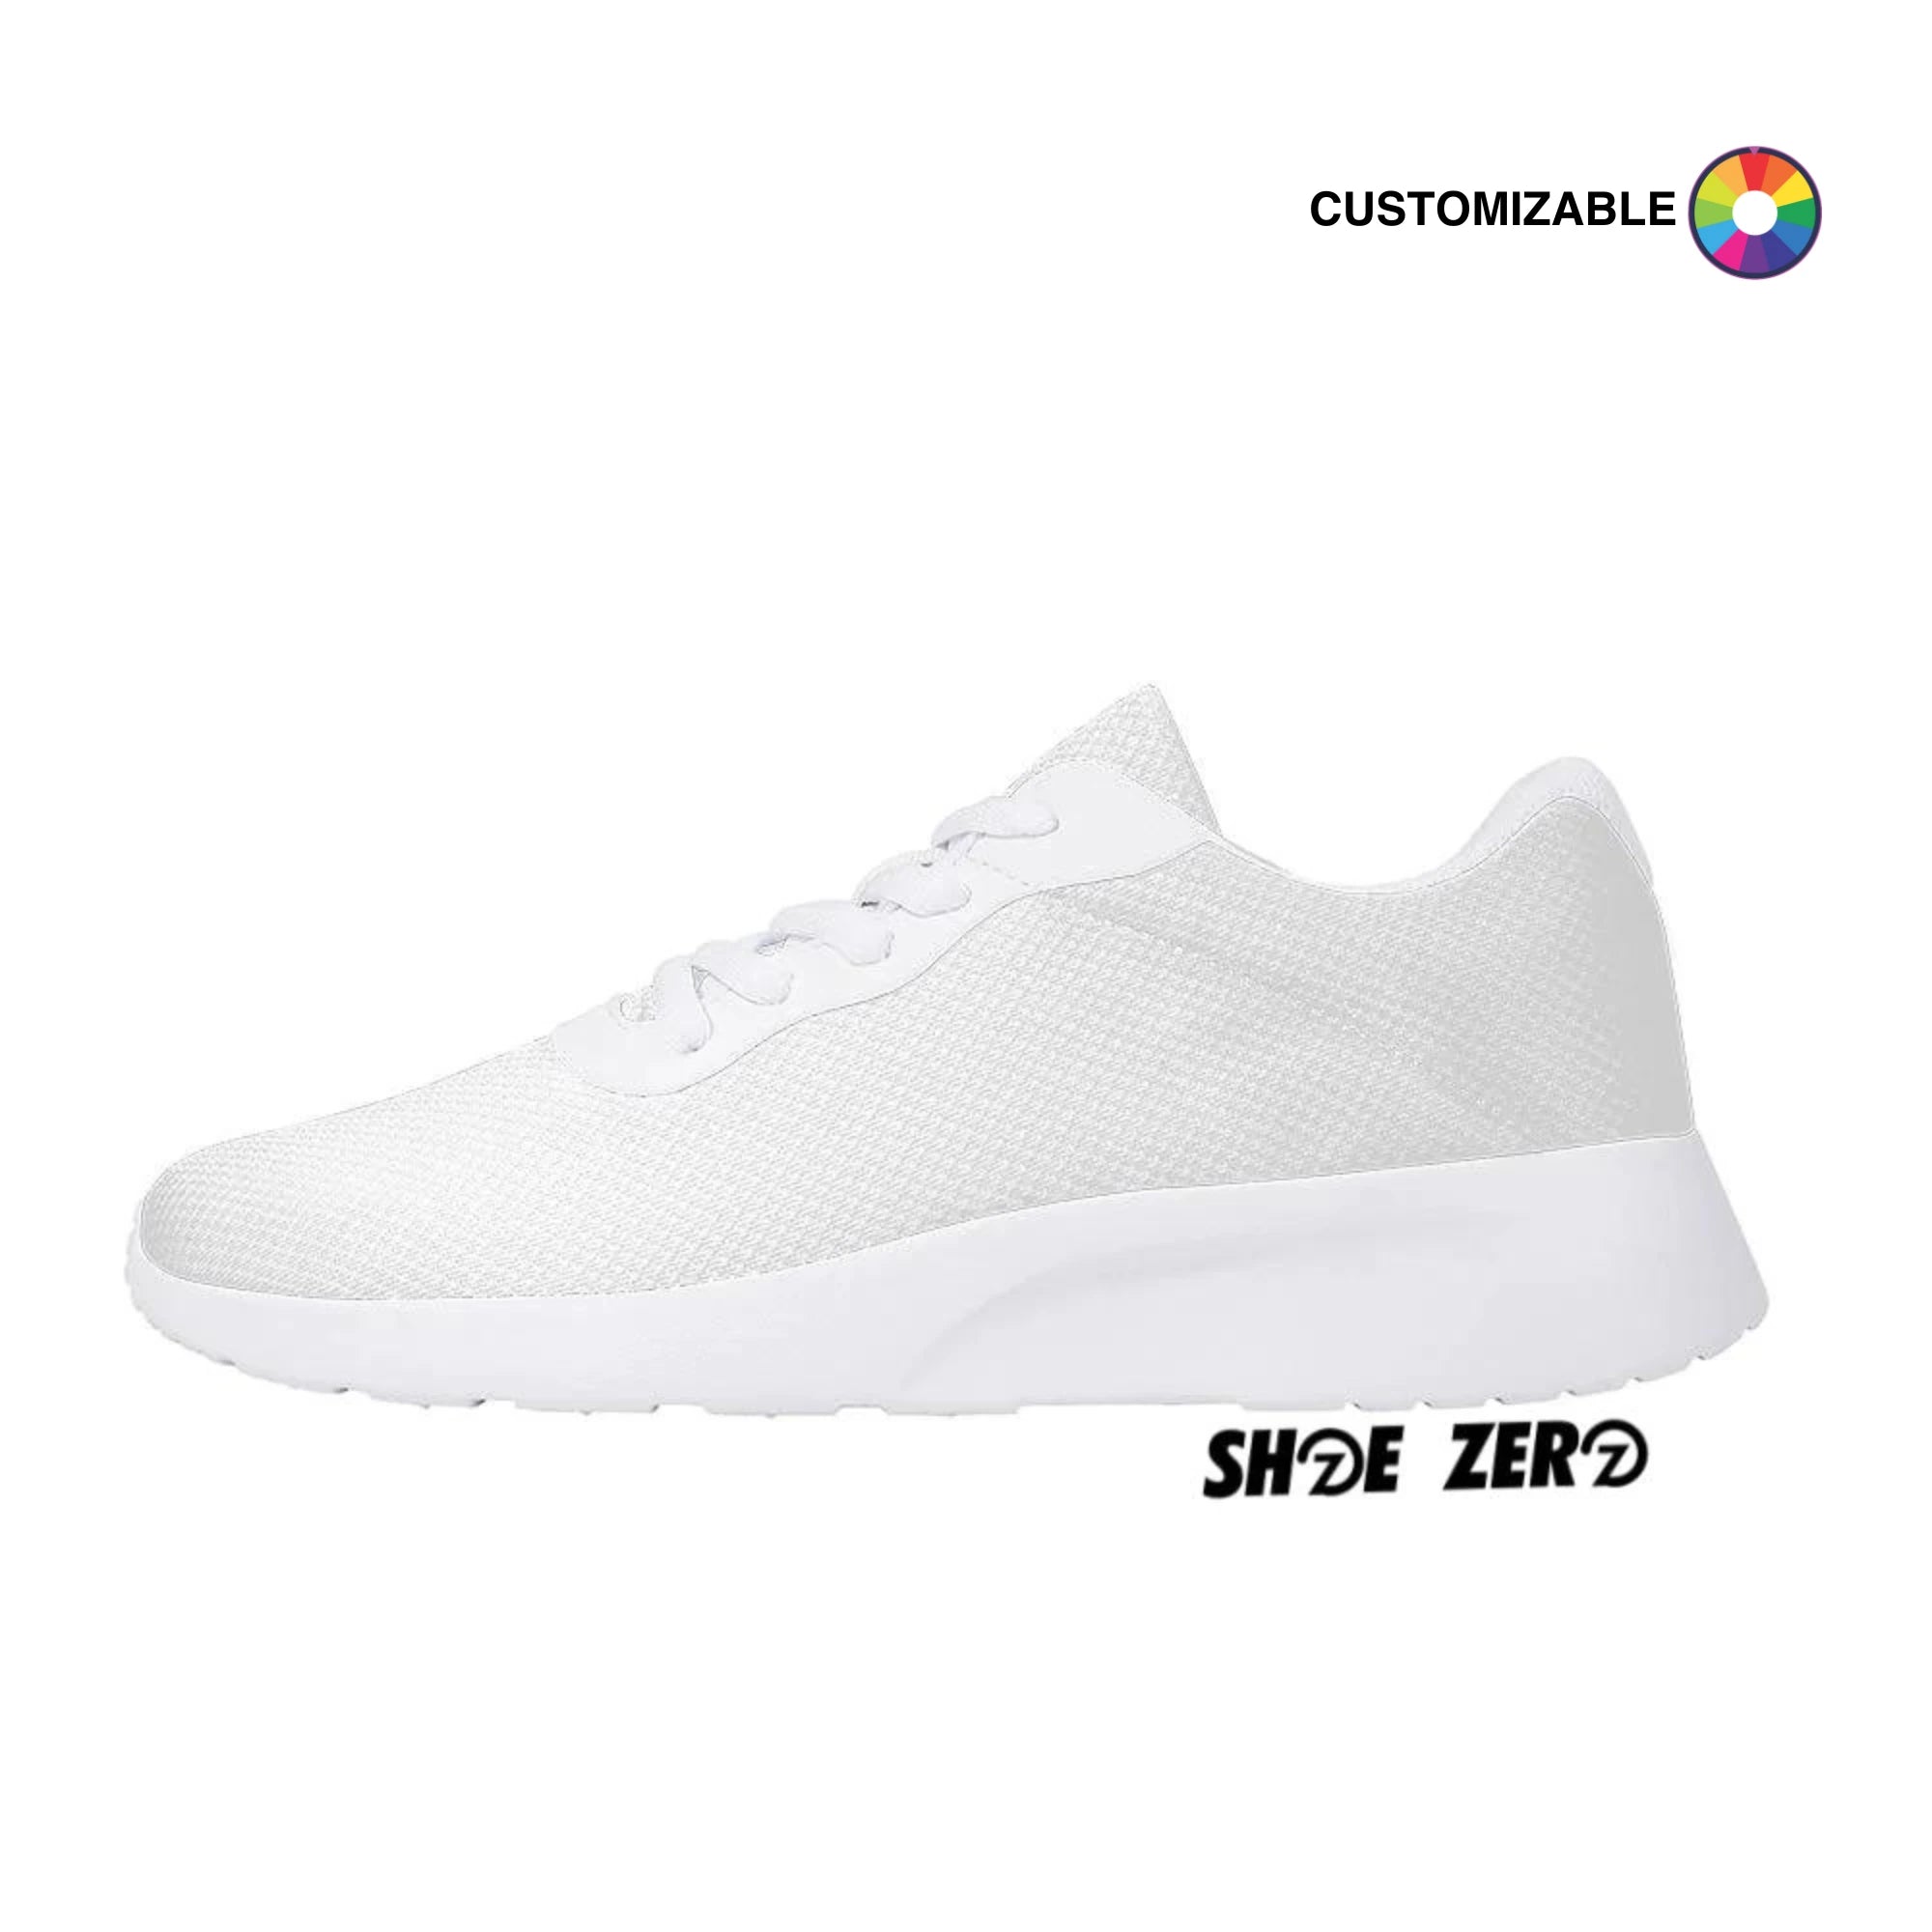 Customizable Air Mesh Zero - White| Design your own